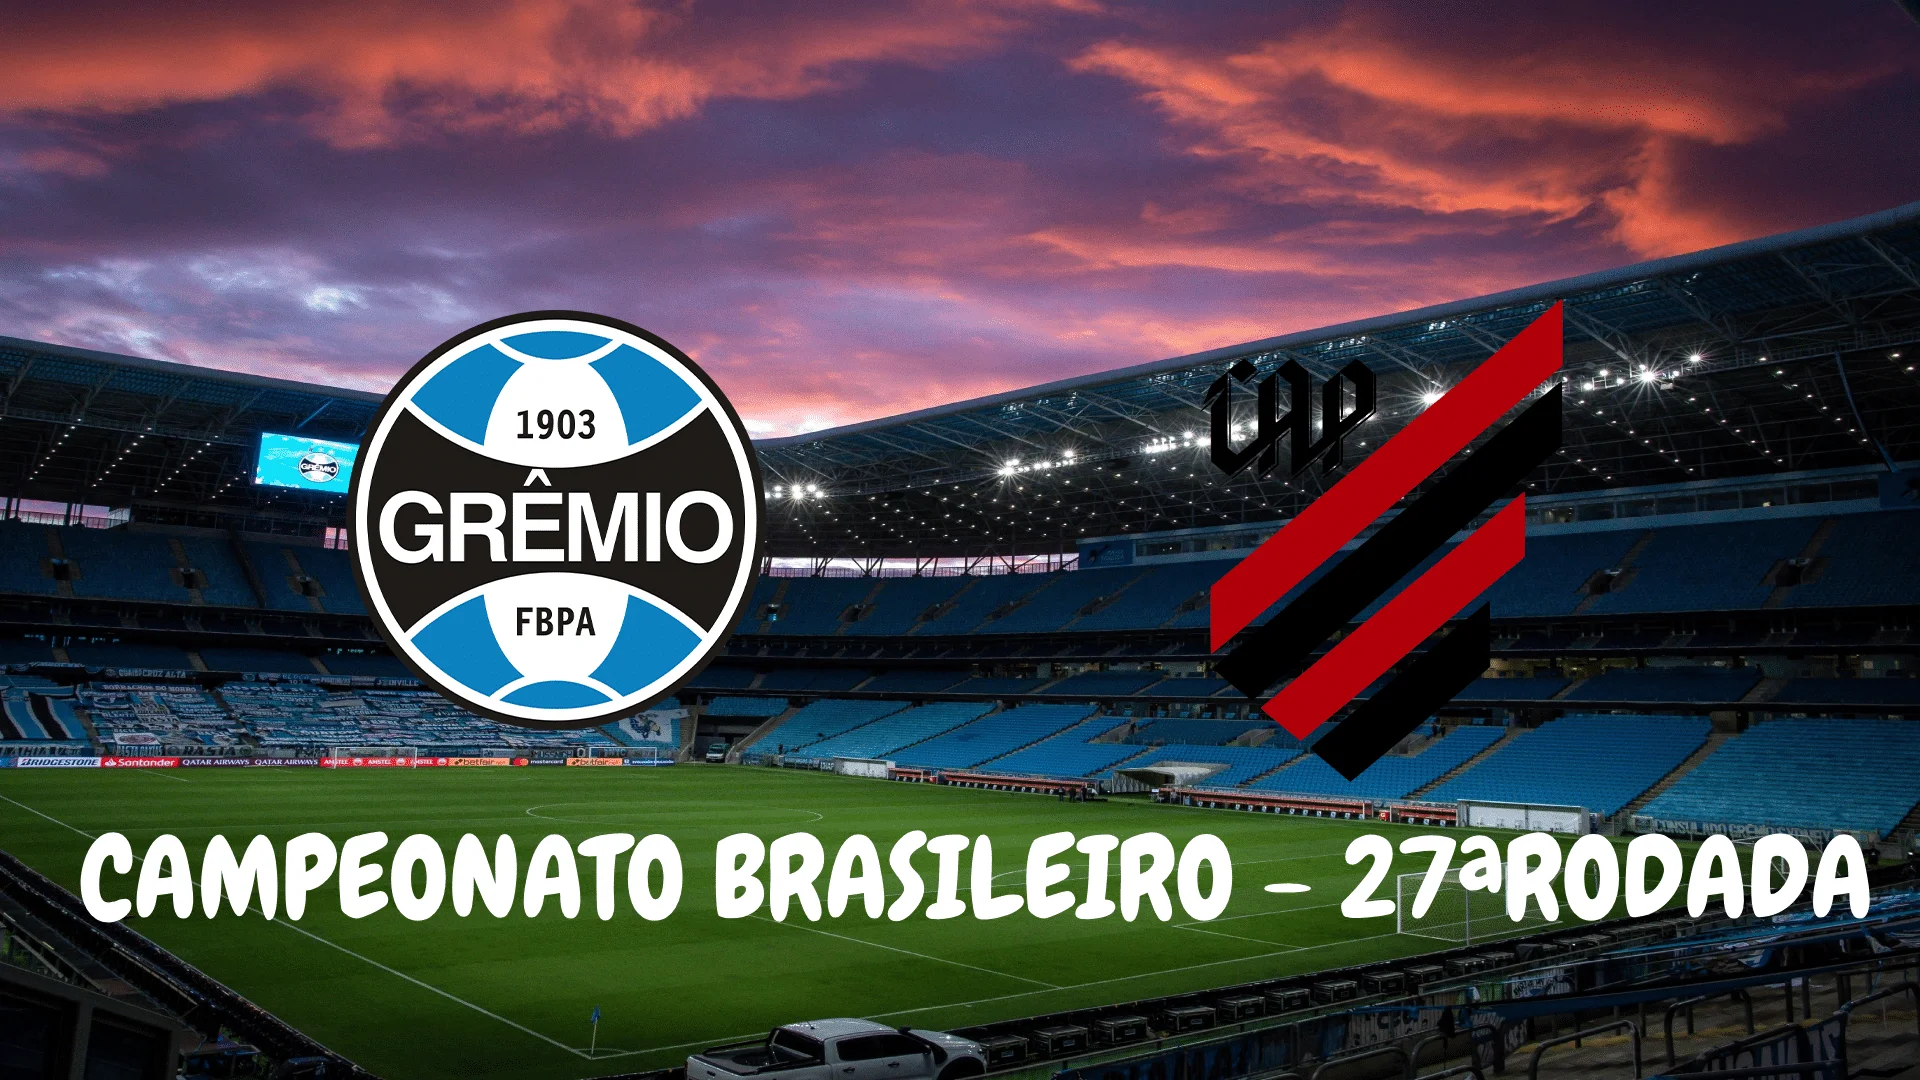 Grêmio x Caxias: A Rivalry on the Football Field